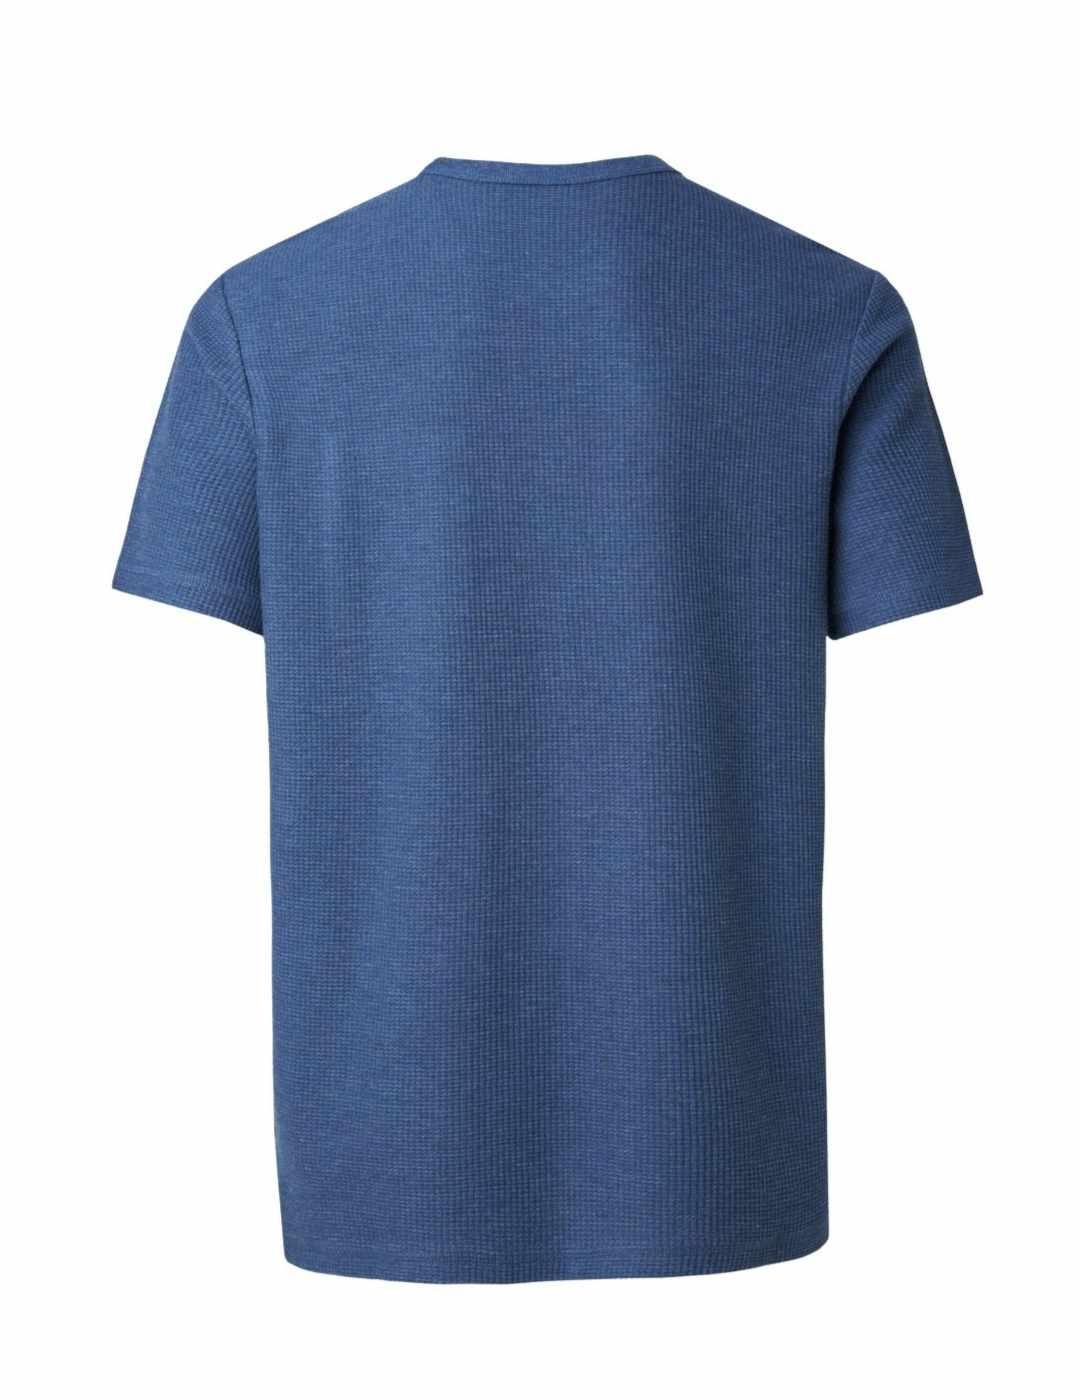 Camiseta Salsamanga corta cuello redondo azul índigo hombre